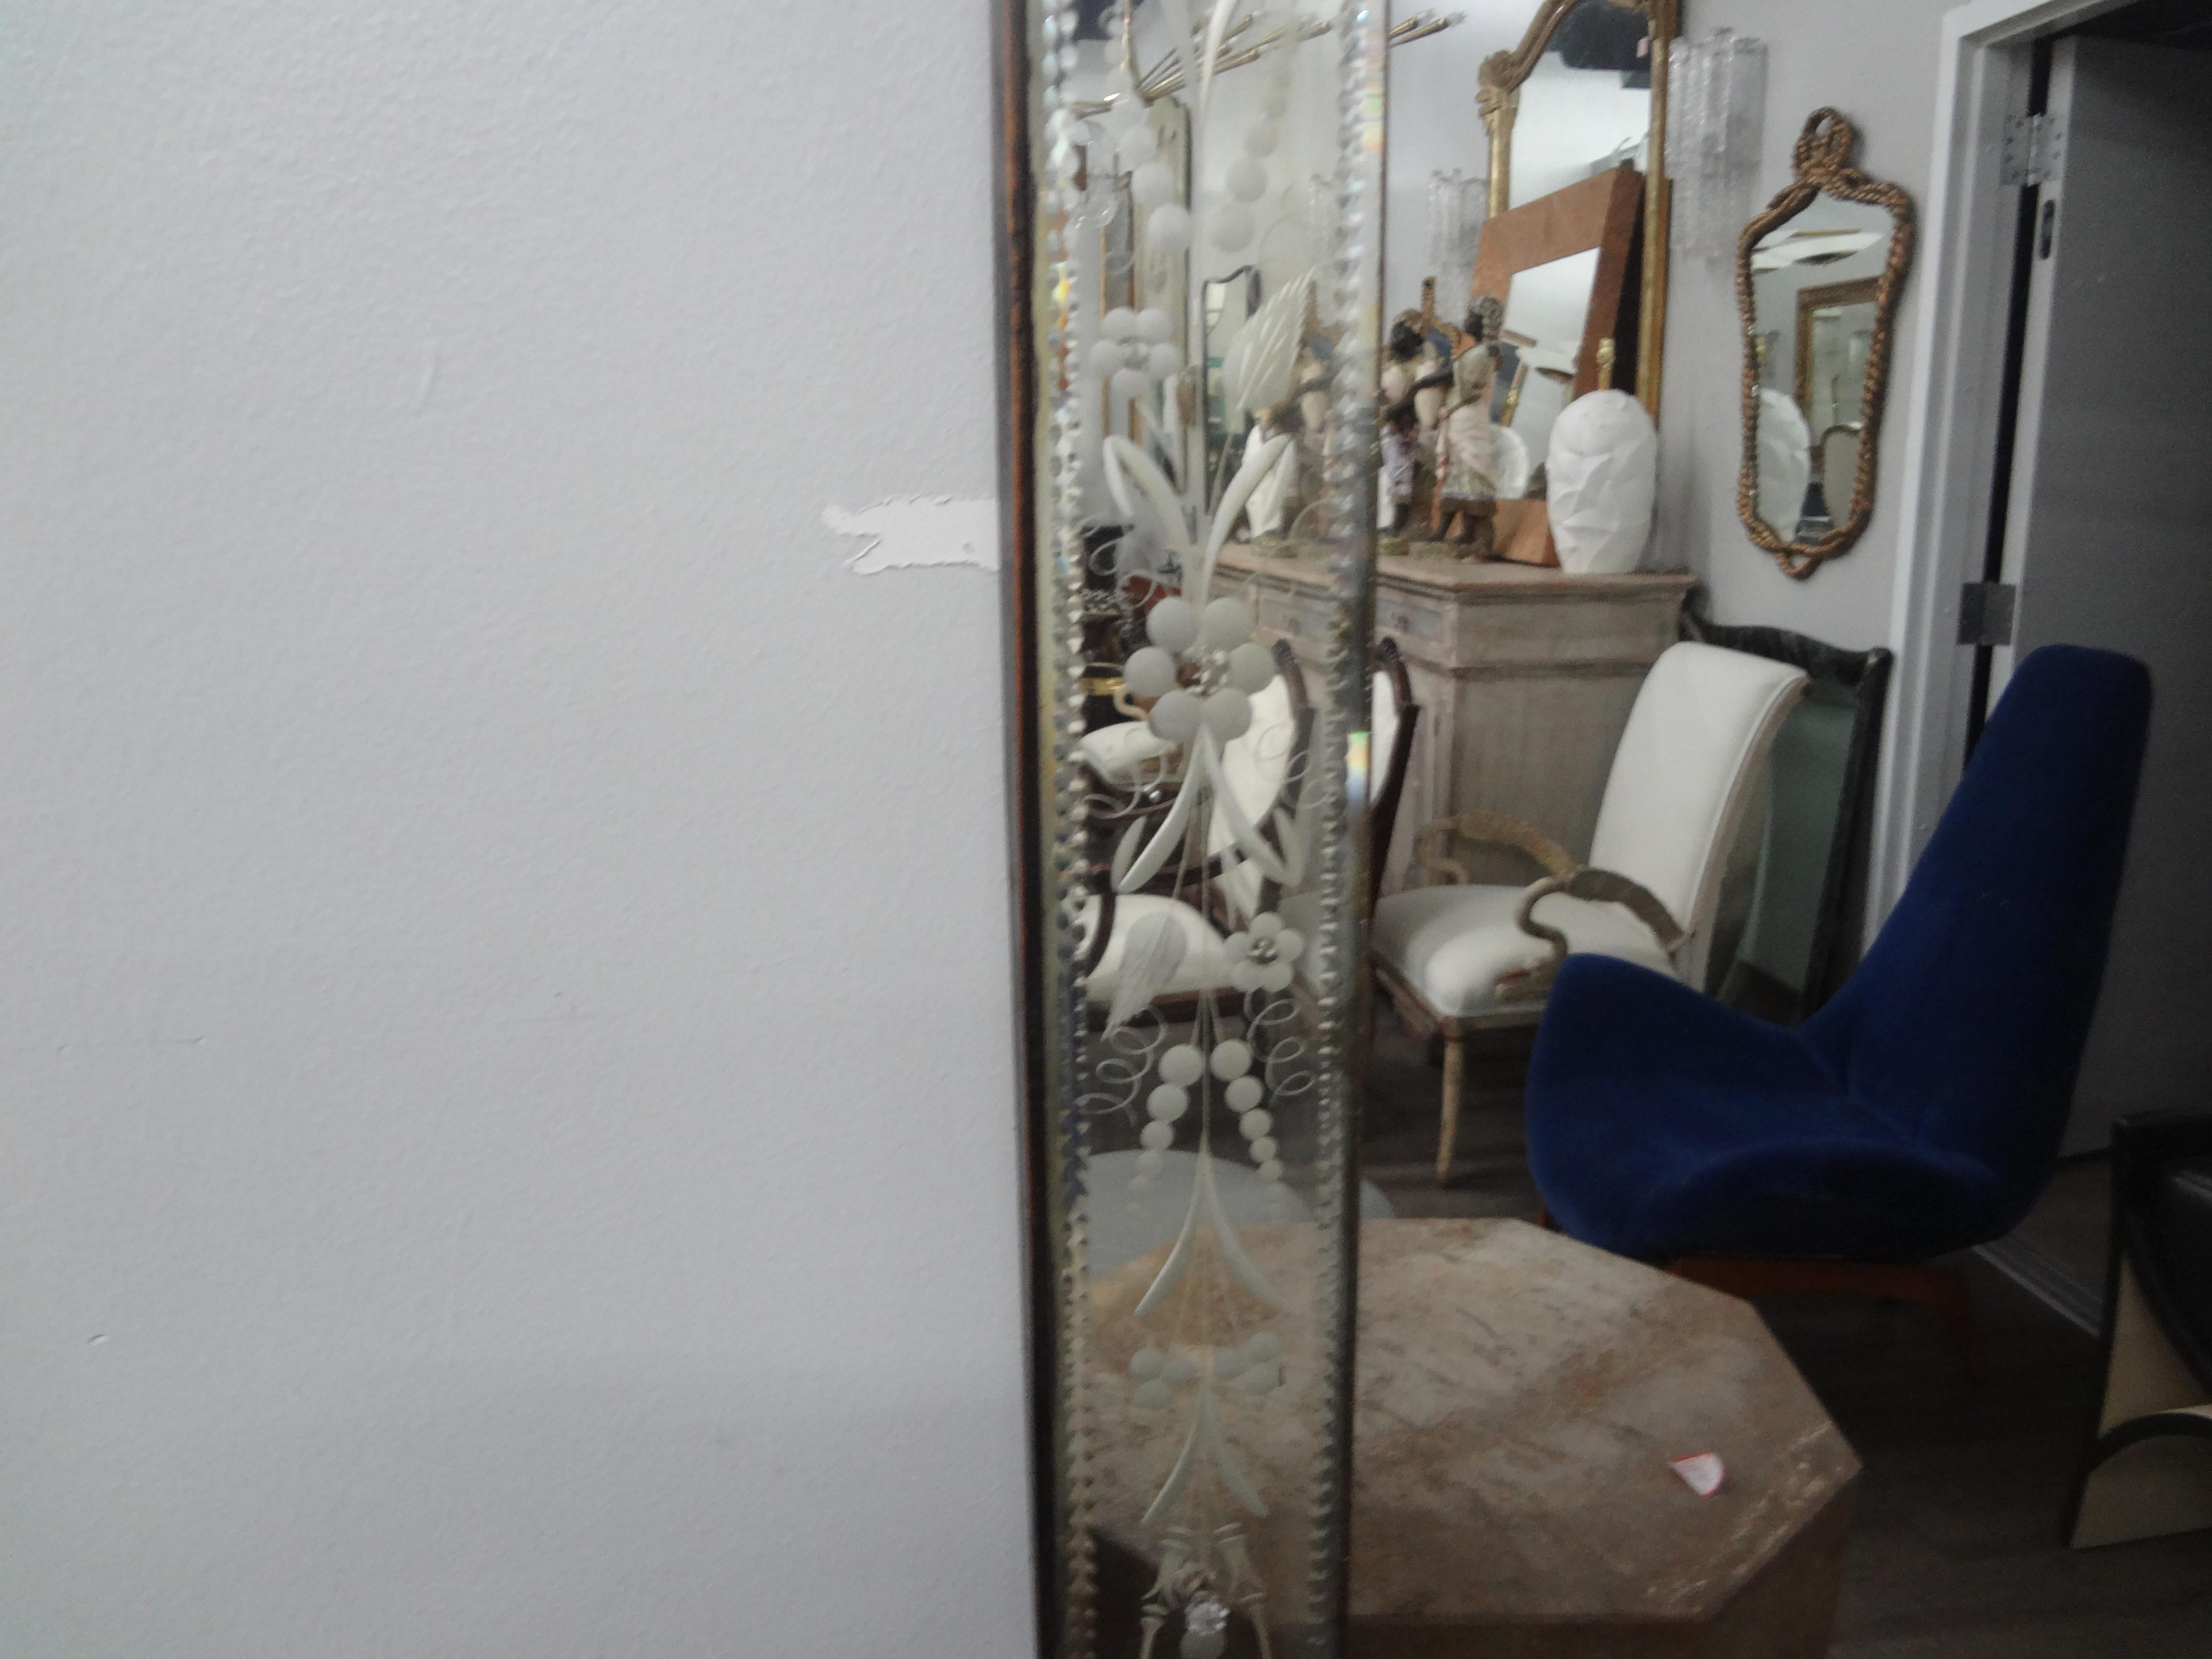 Grand miroir vénitien, gravé et biseauté 
Miroir vénitien biseauté de style Art déco italien. Ce superbe miroir vénitien biseauté de style Hollywood Regency est de forme rectangulaire et peut être exposé verticalement ou horizontalement.